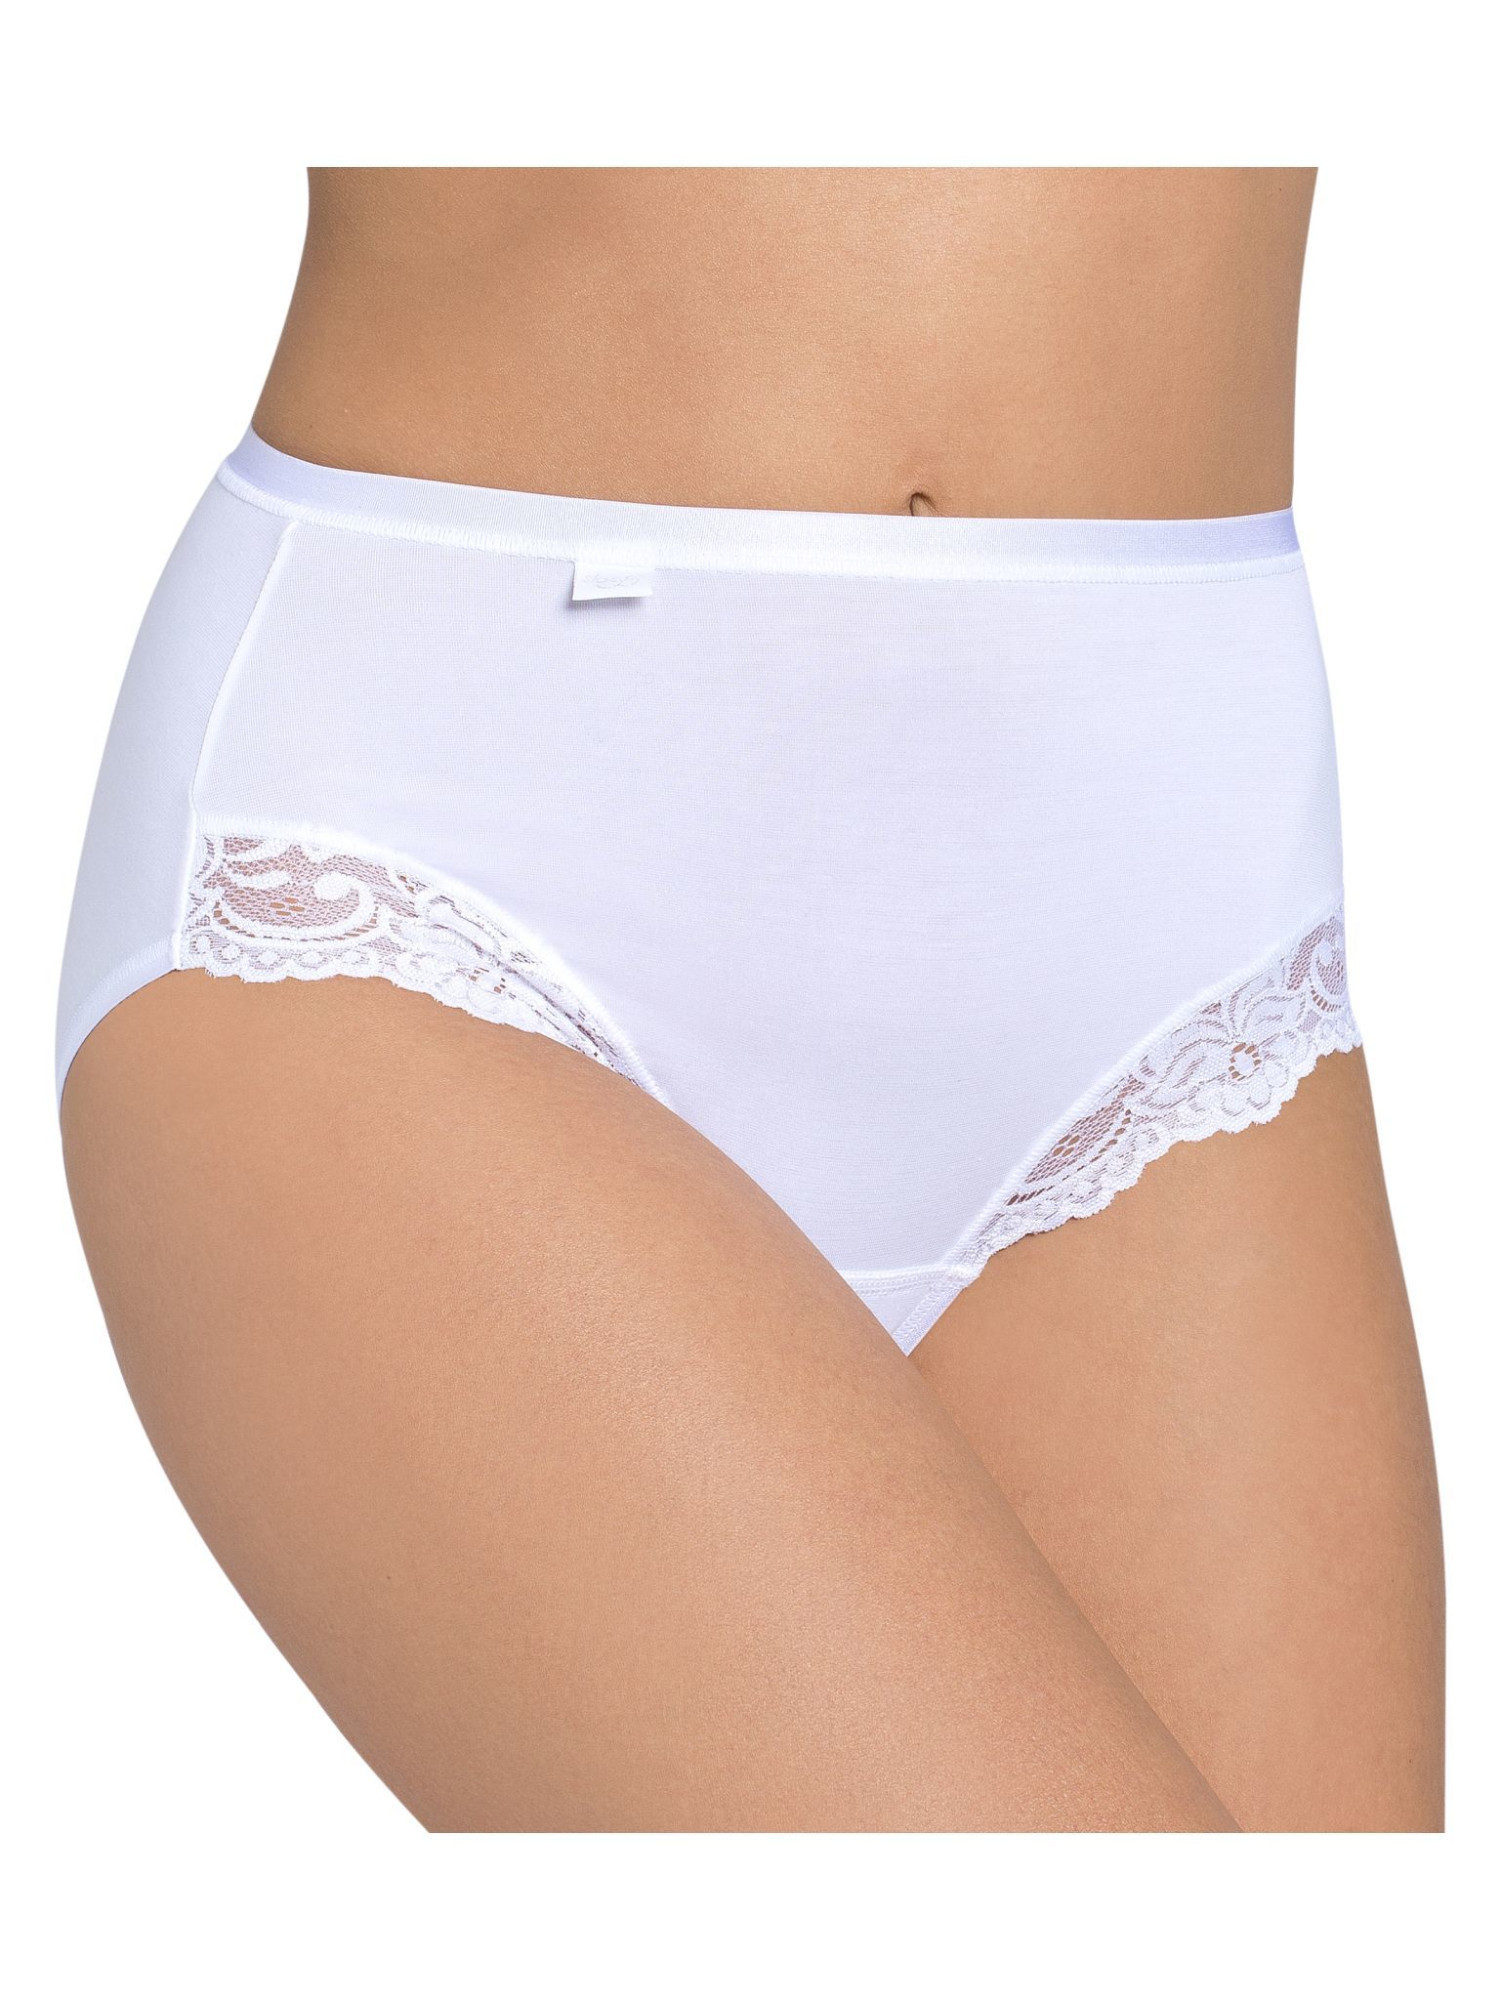 Dámské kalhotky Romance Maxi bílé - Sloggi WHITE 42